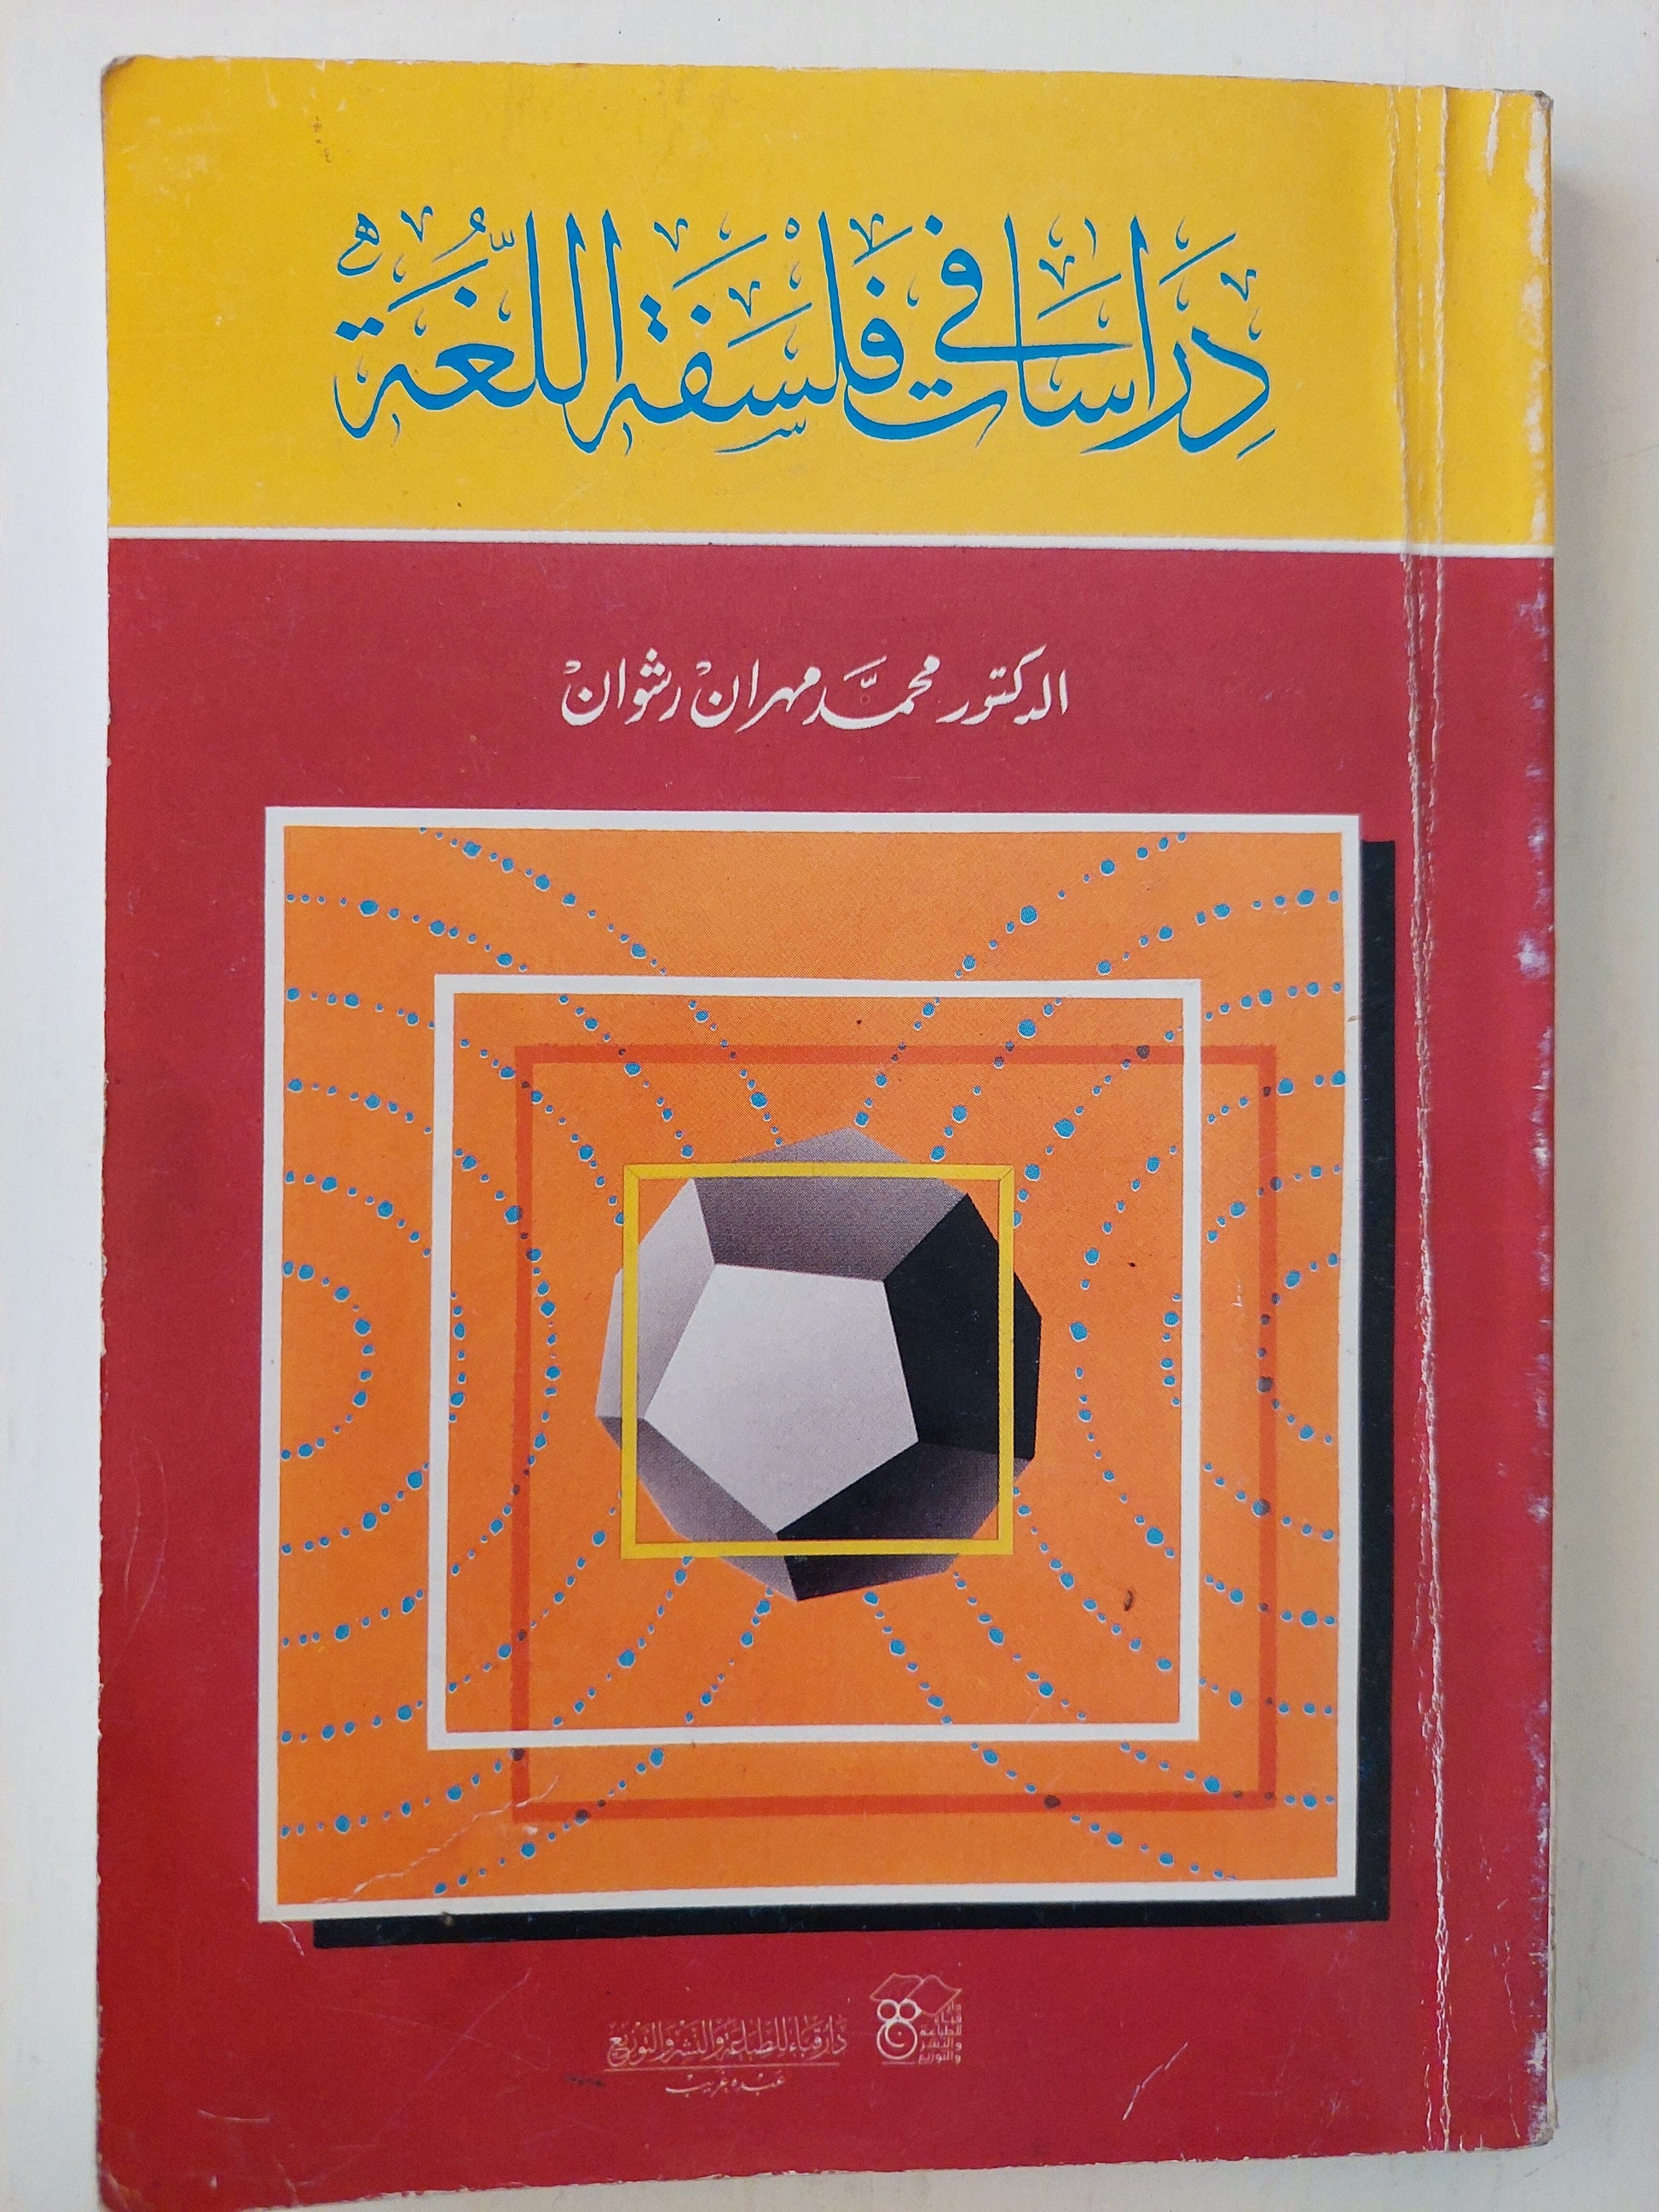 دراسات في فلسفة اللغة - د. محمد مهران رشوان كتاب المكتبة الفلسفية 